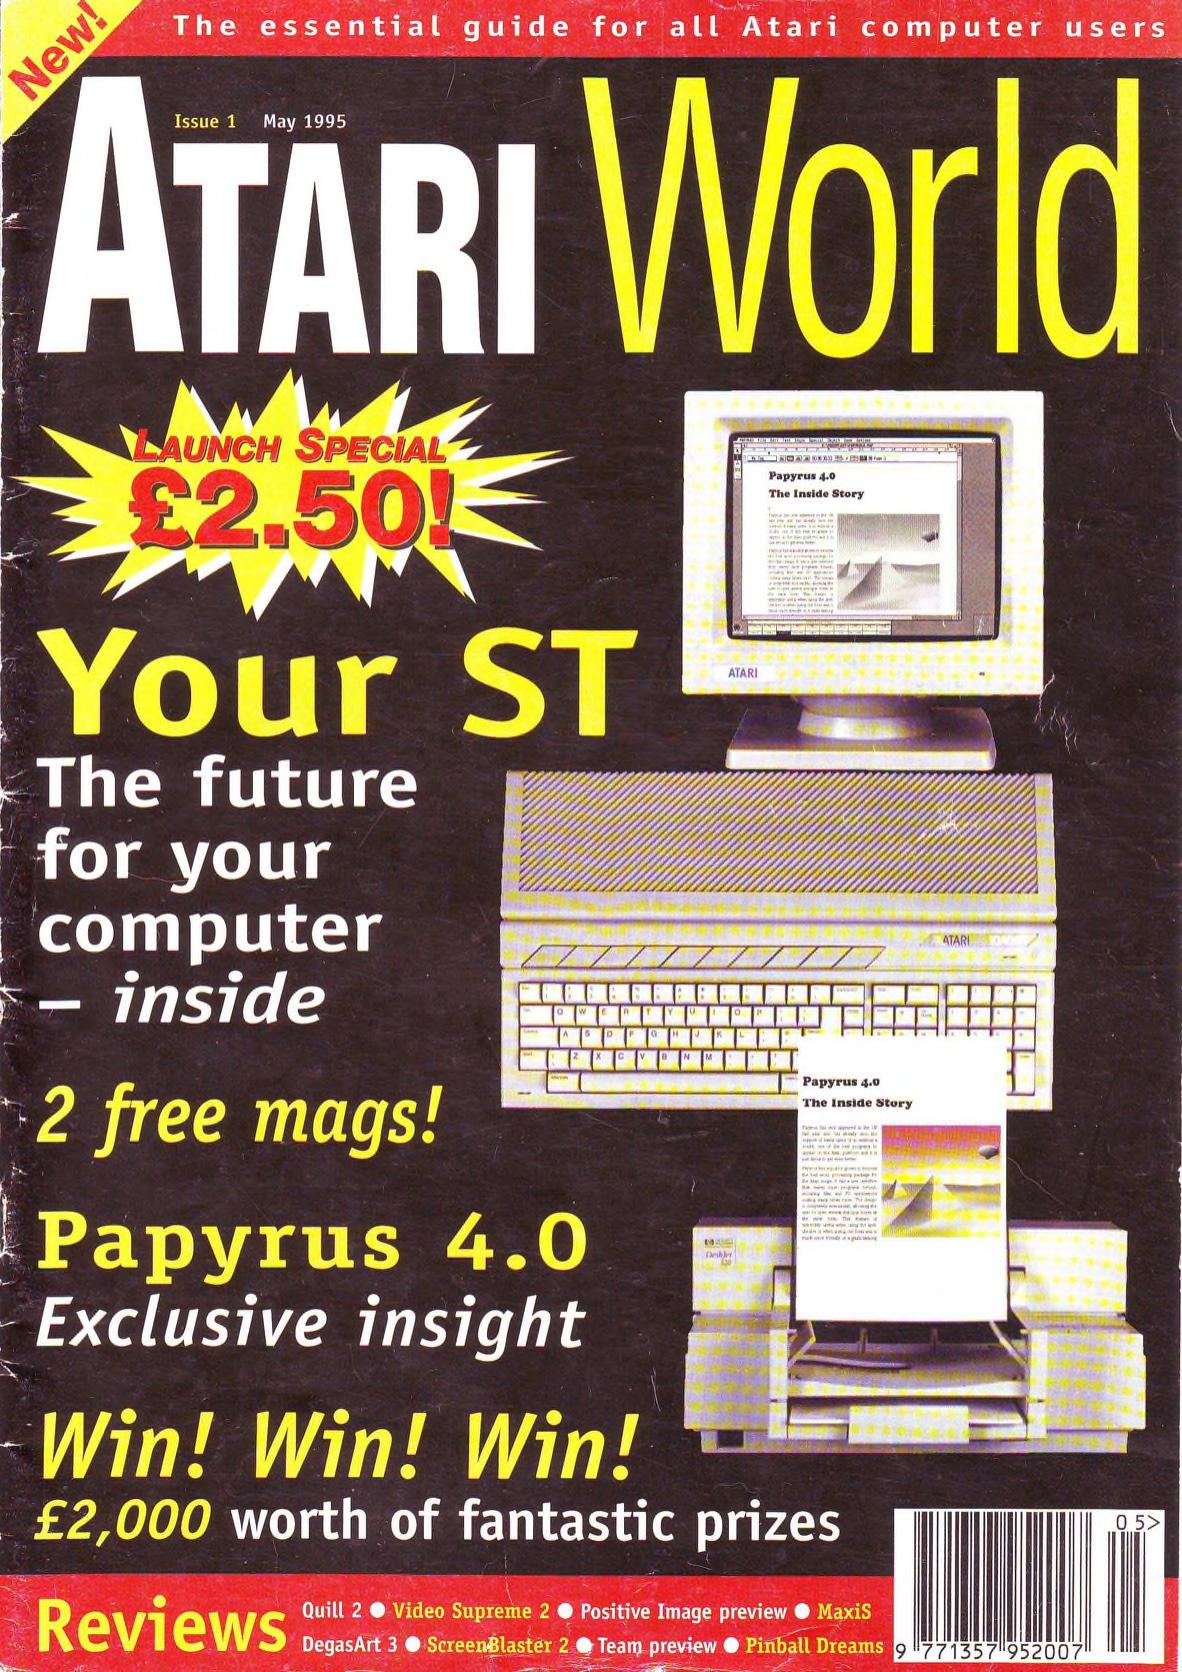 Cover for Atari World 1 (May 1995)